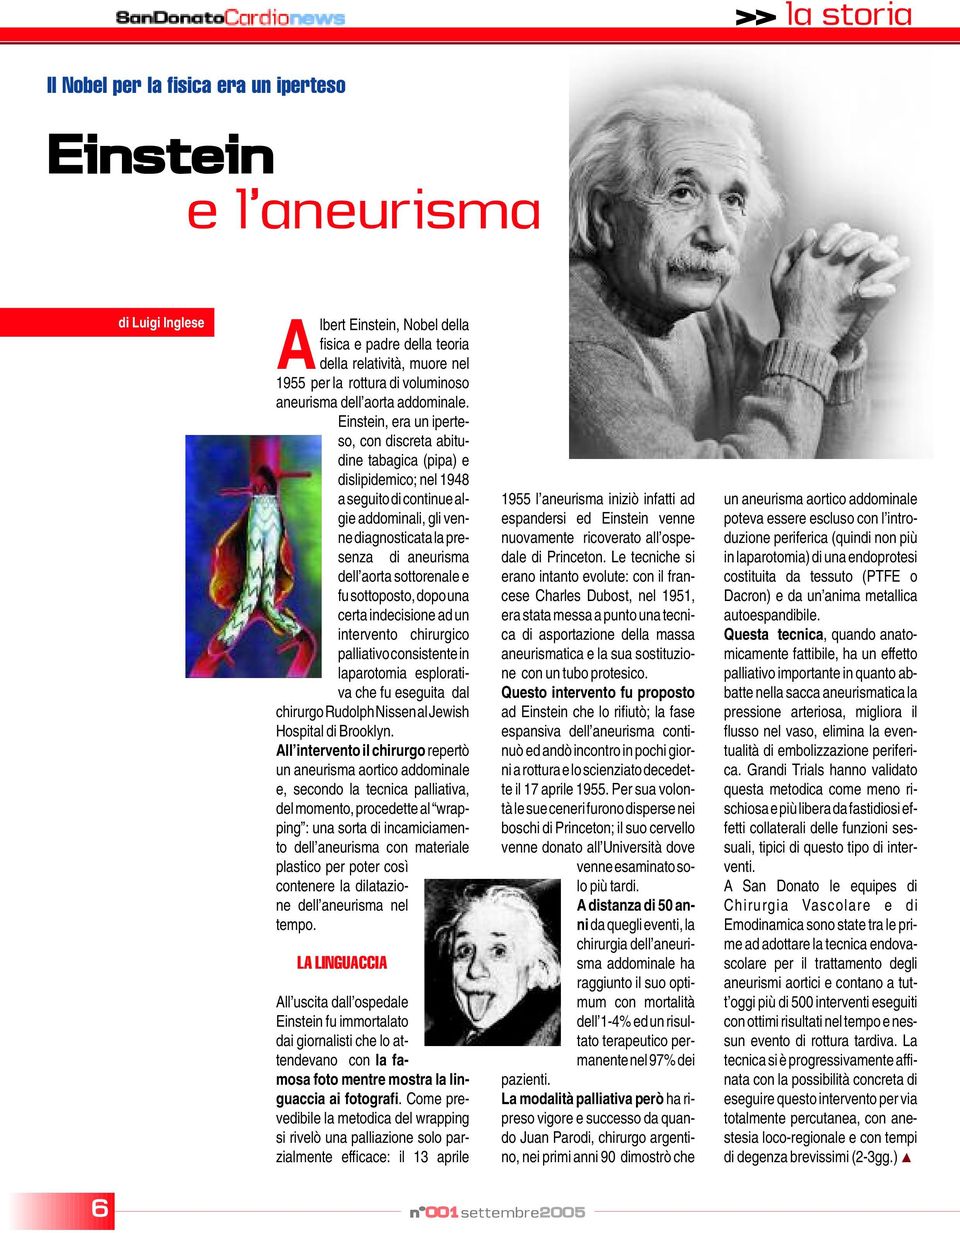 Einstein, era un iperteso, con discreta abitudine tabagica (pipa) e dislipidemico; nel 1948 a seguito di continue algie addominali, gli venne diagnosticata la presenza di aneurisma dell aorta